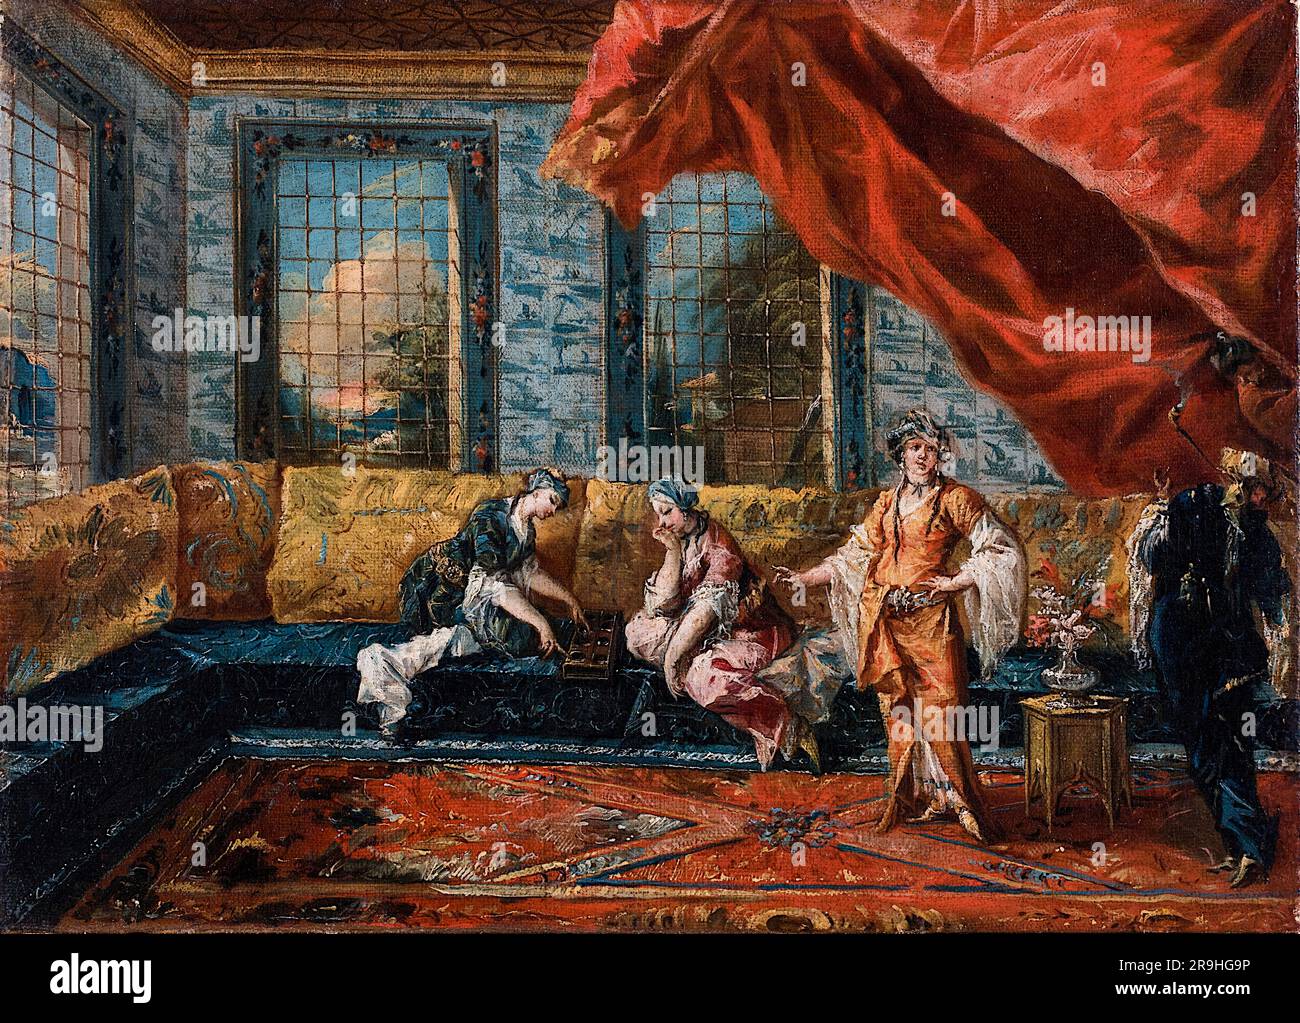 Francesco guardi e Giovanni Antonio guardi, due Odalischi che interpretano Mancala nell'Harem, pittura ad olio su tela, 1742-1743 Foto Stock